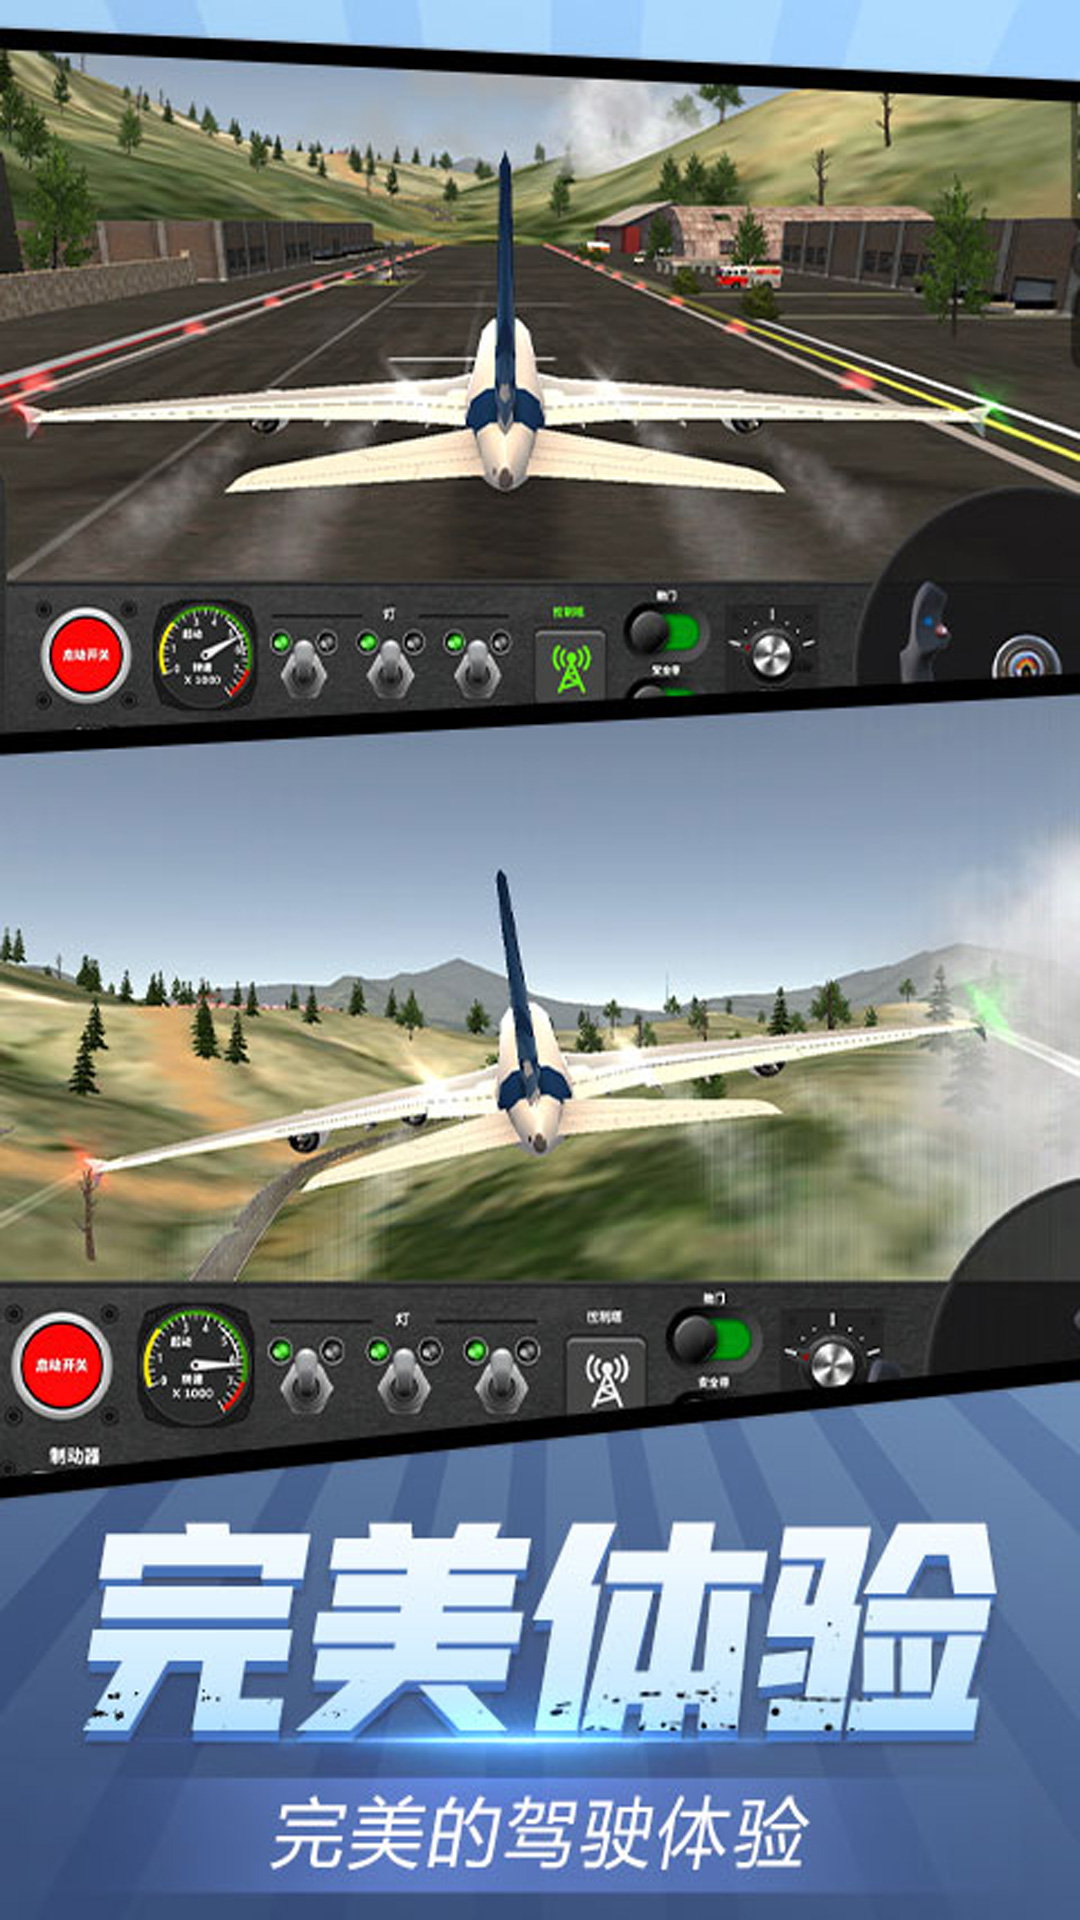 安全飞行模拟器游戏官方手机版截图2: